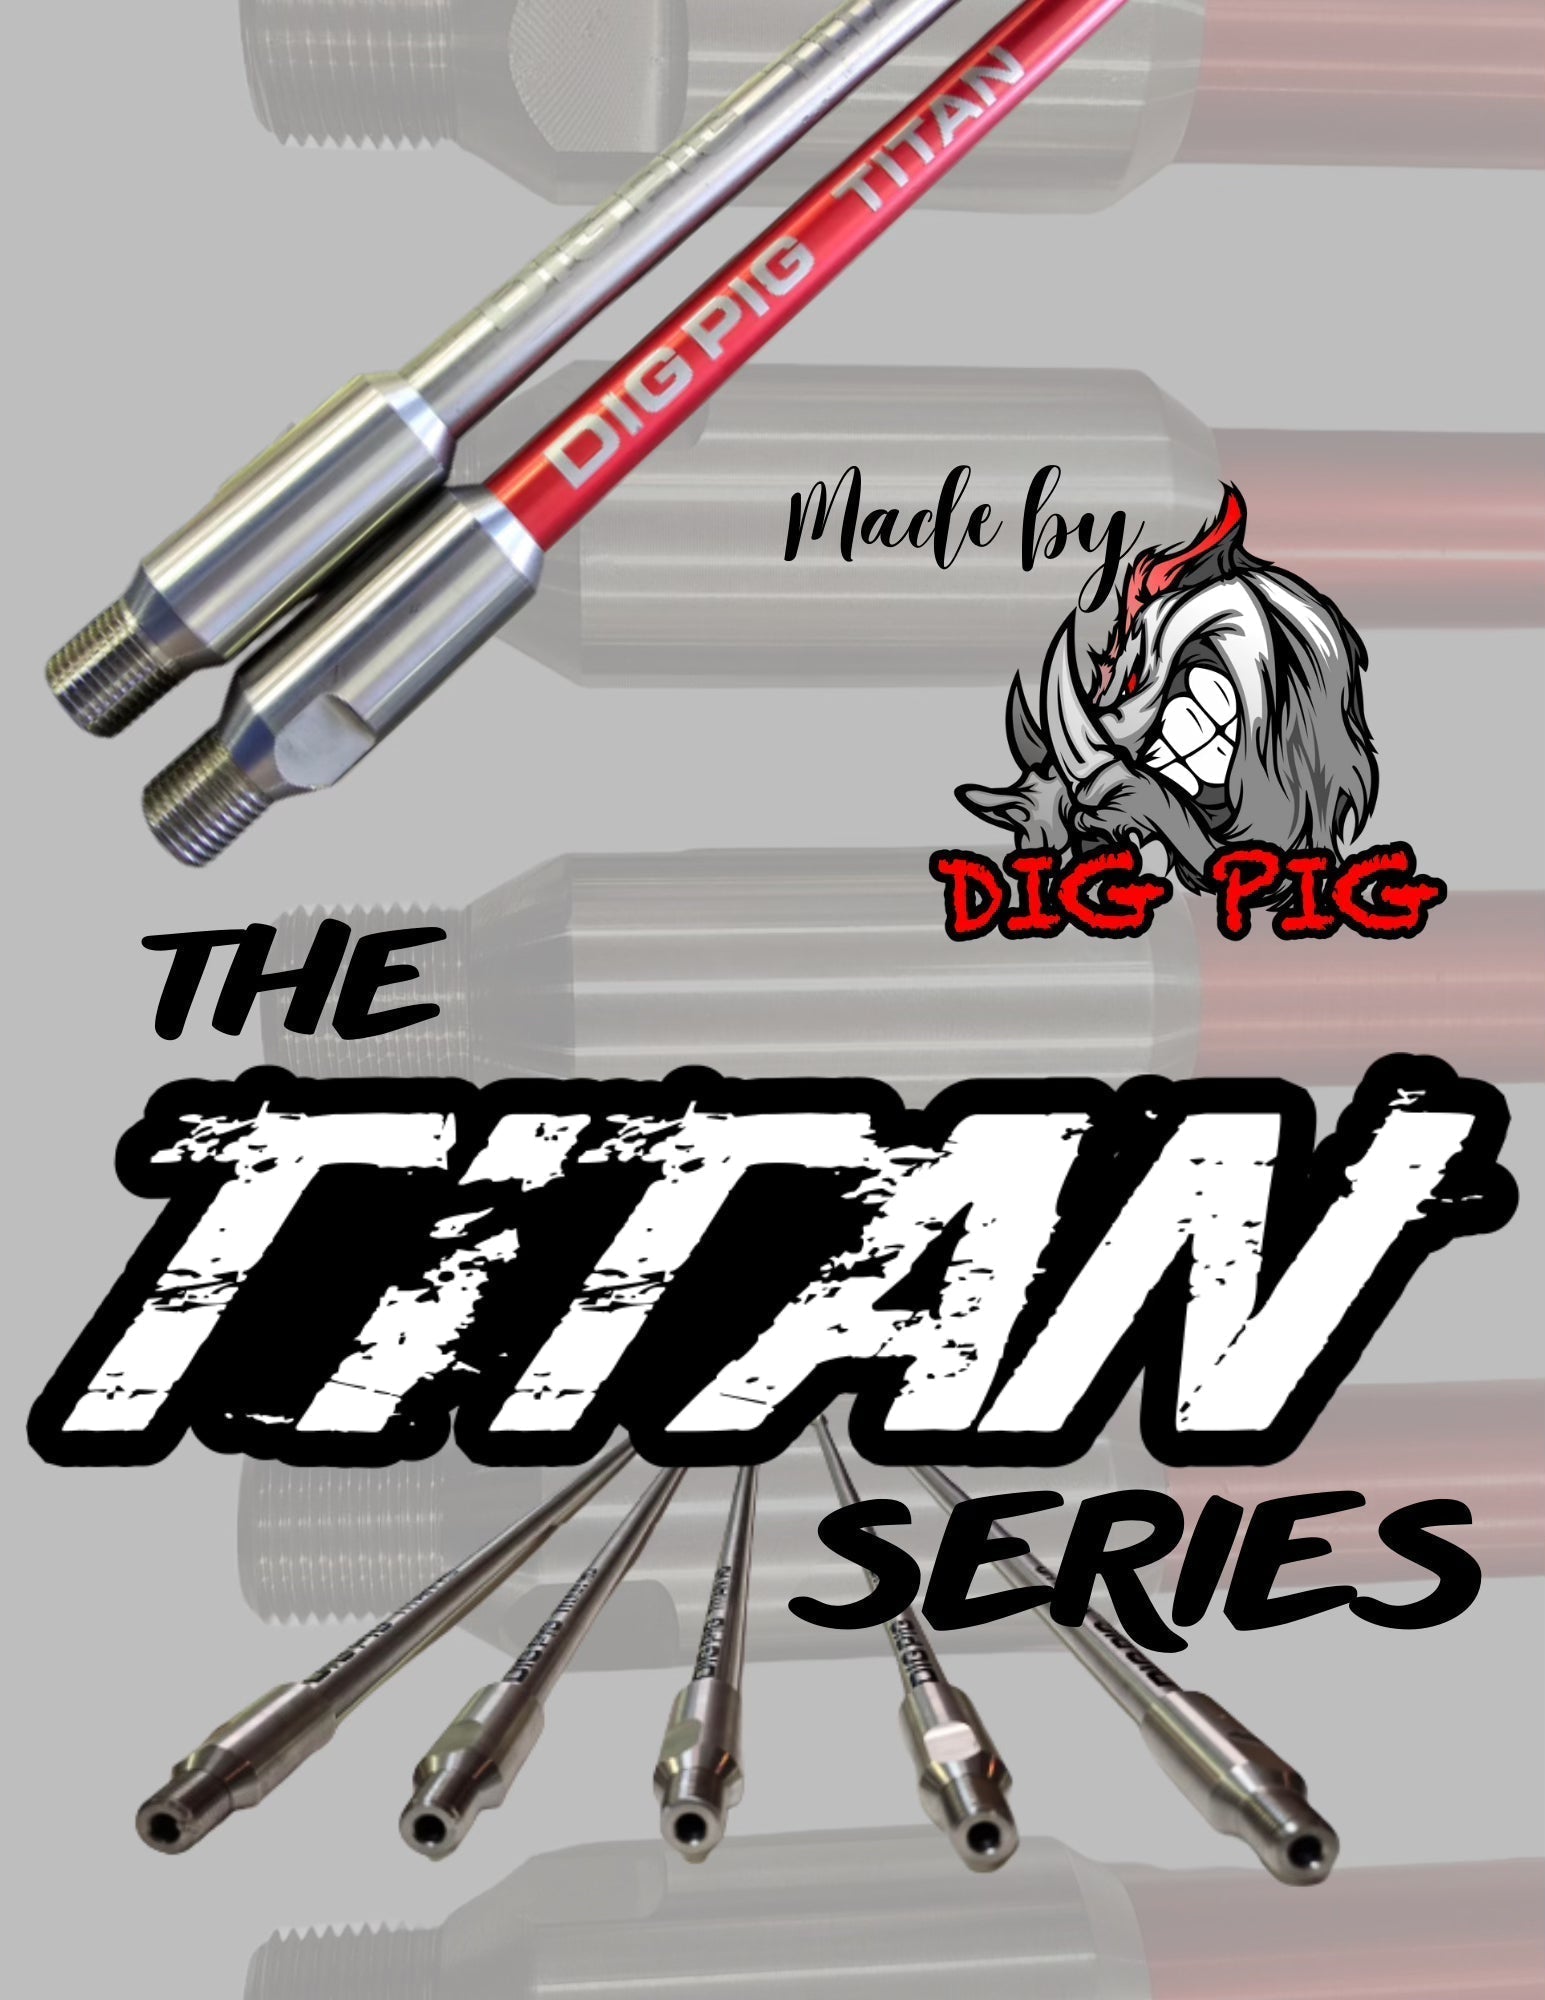 Titan Wand Extension Set by Dig Pig – Sewer Gear Guru